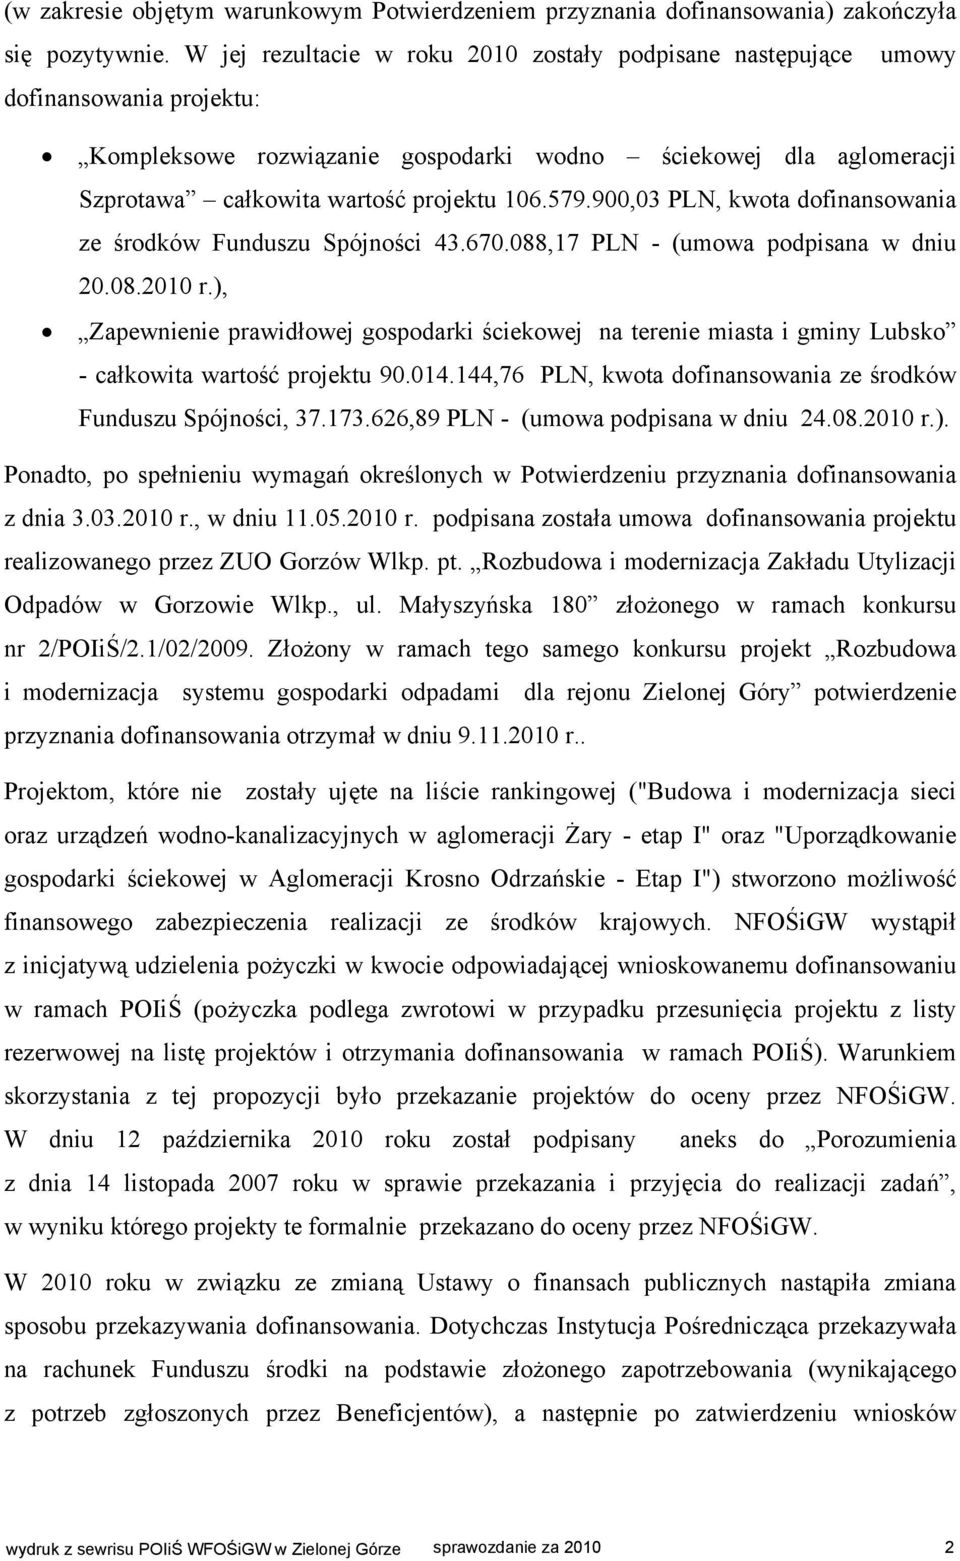 579.900,03 PLN, kwota dofinansowania ze środków Funduszu Spójności 43.670.088,17 PLN - (umowa podpisana w dniu 20.08.2010 r.